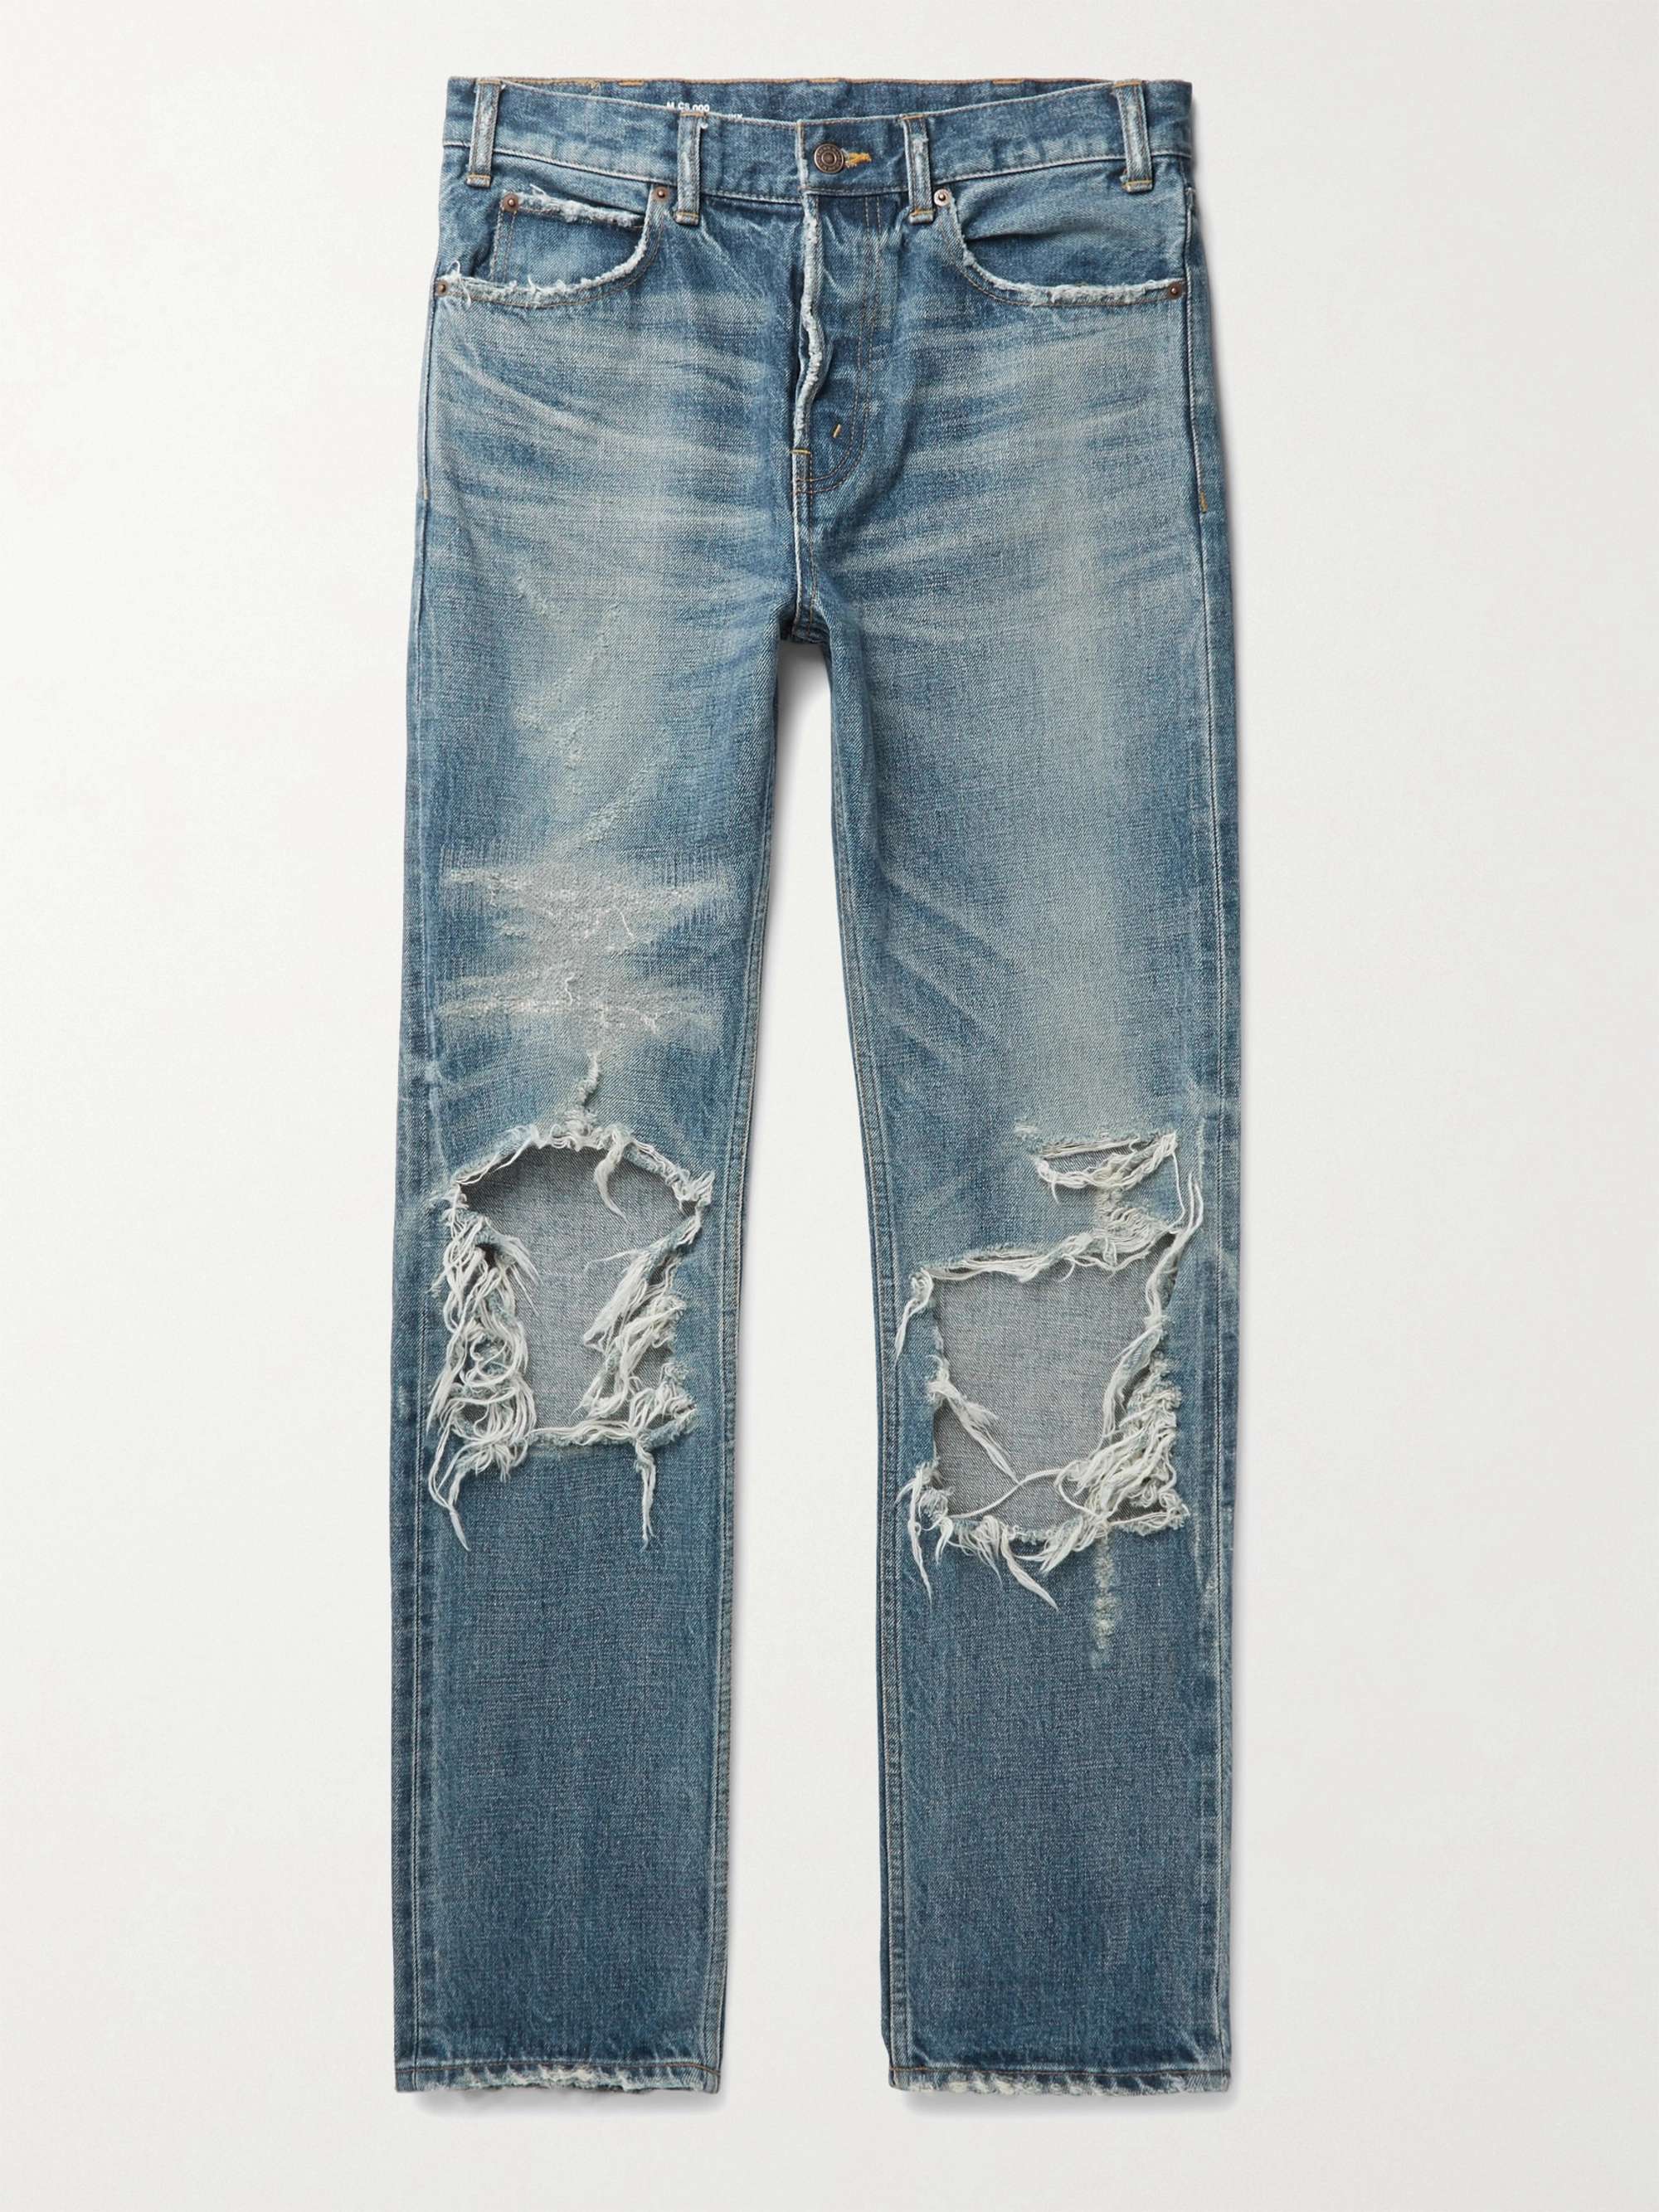 CELINE HOMME Slim-Fit Distressed Denim Jeans for Men | MR PORTER